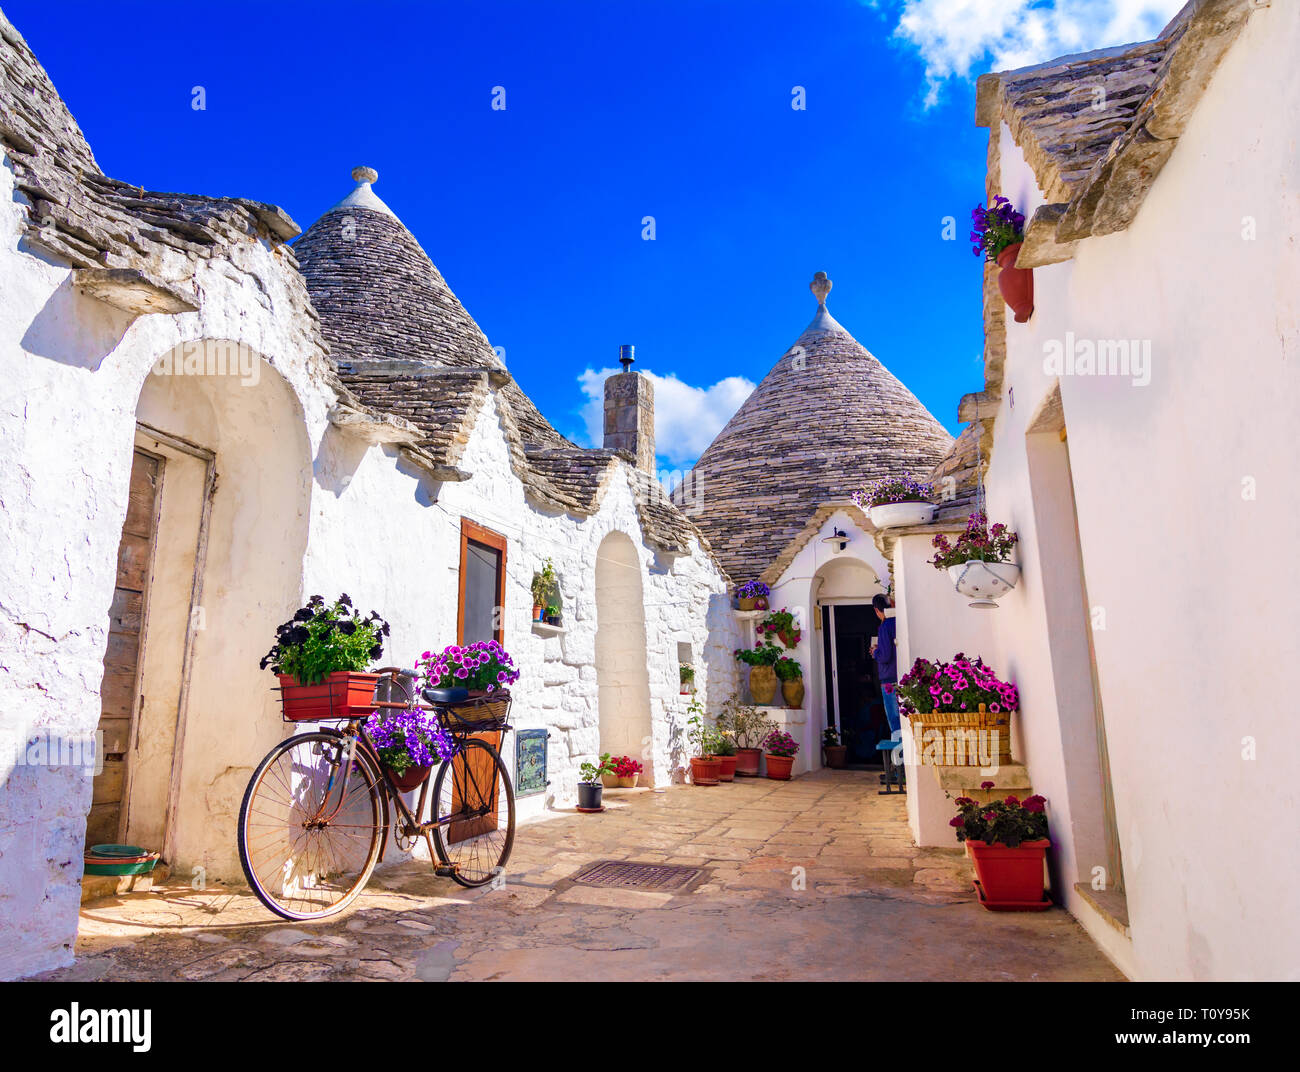 Alberobello Puglia, Italia: tipiche case costruite con muri in pietra a secco e tetti conici, in una bella giornata, Puglia Foto Stock